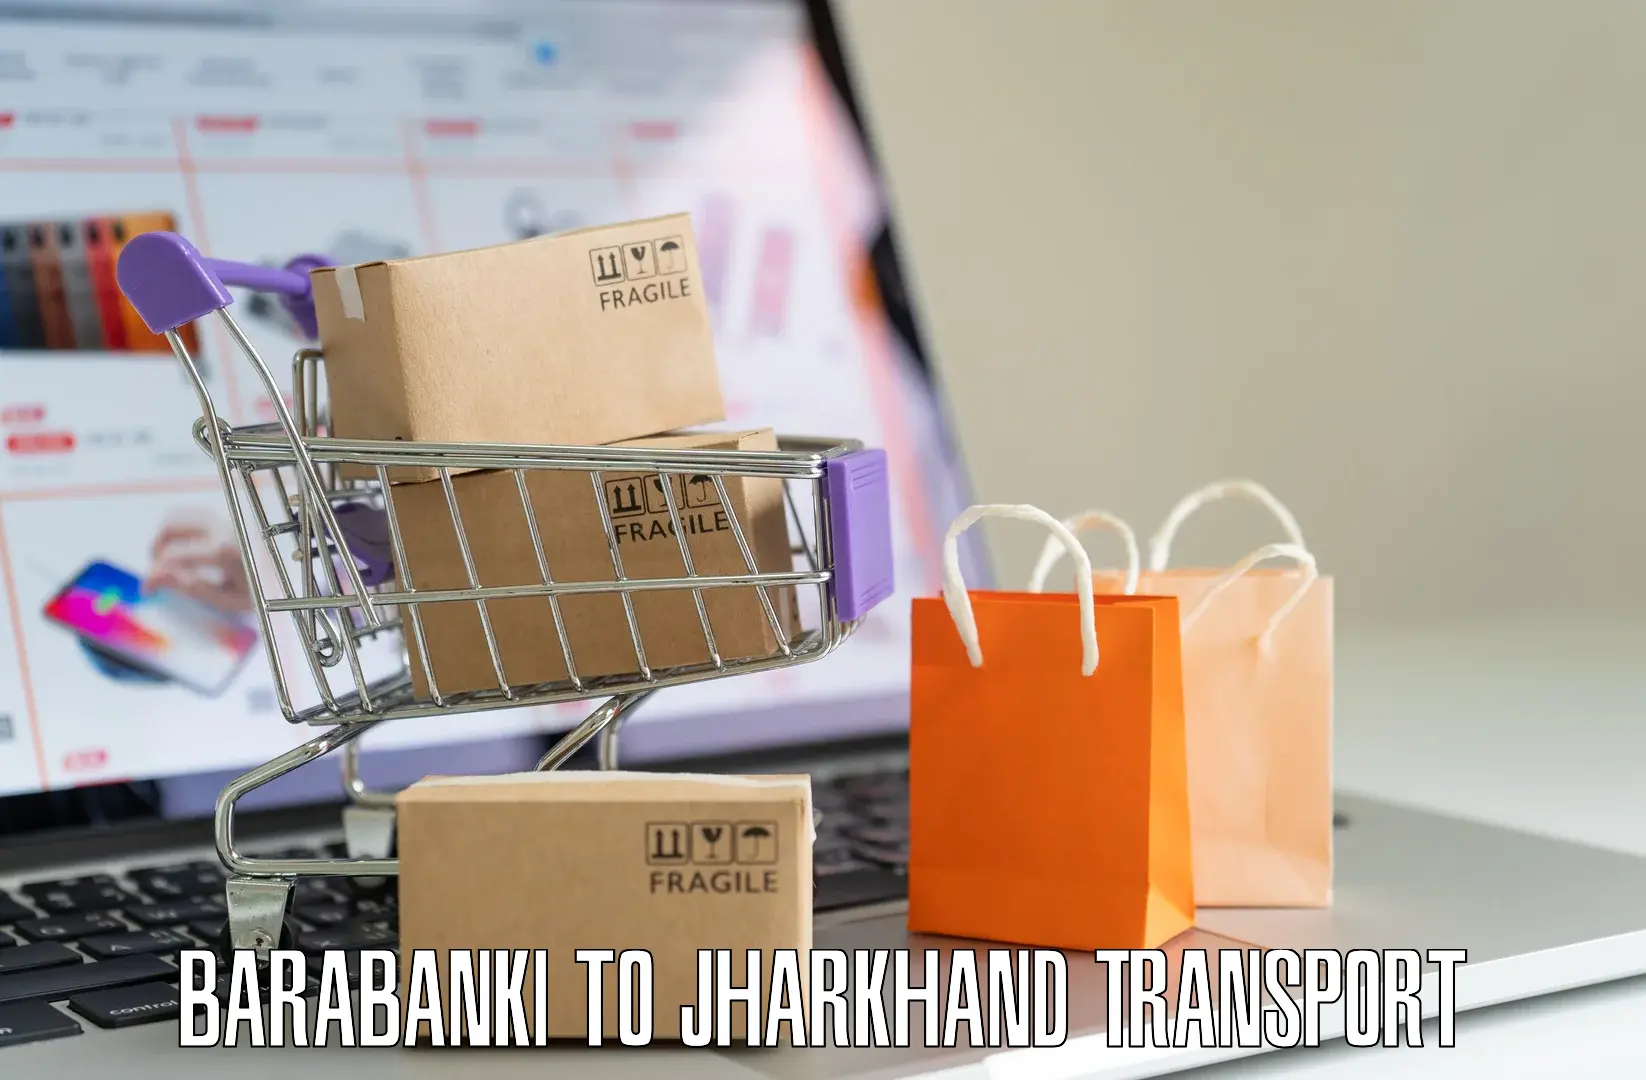 Online transport booking Barabanki to Giridih